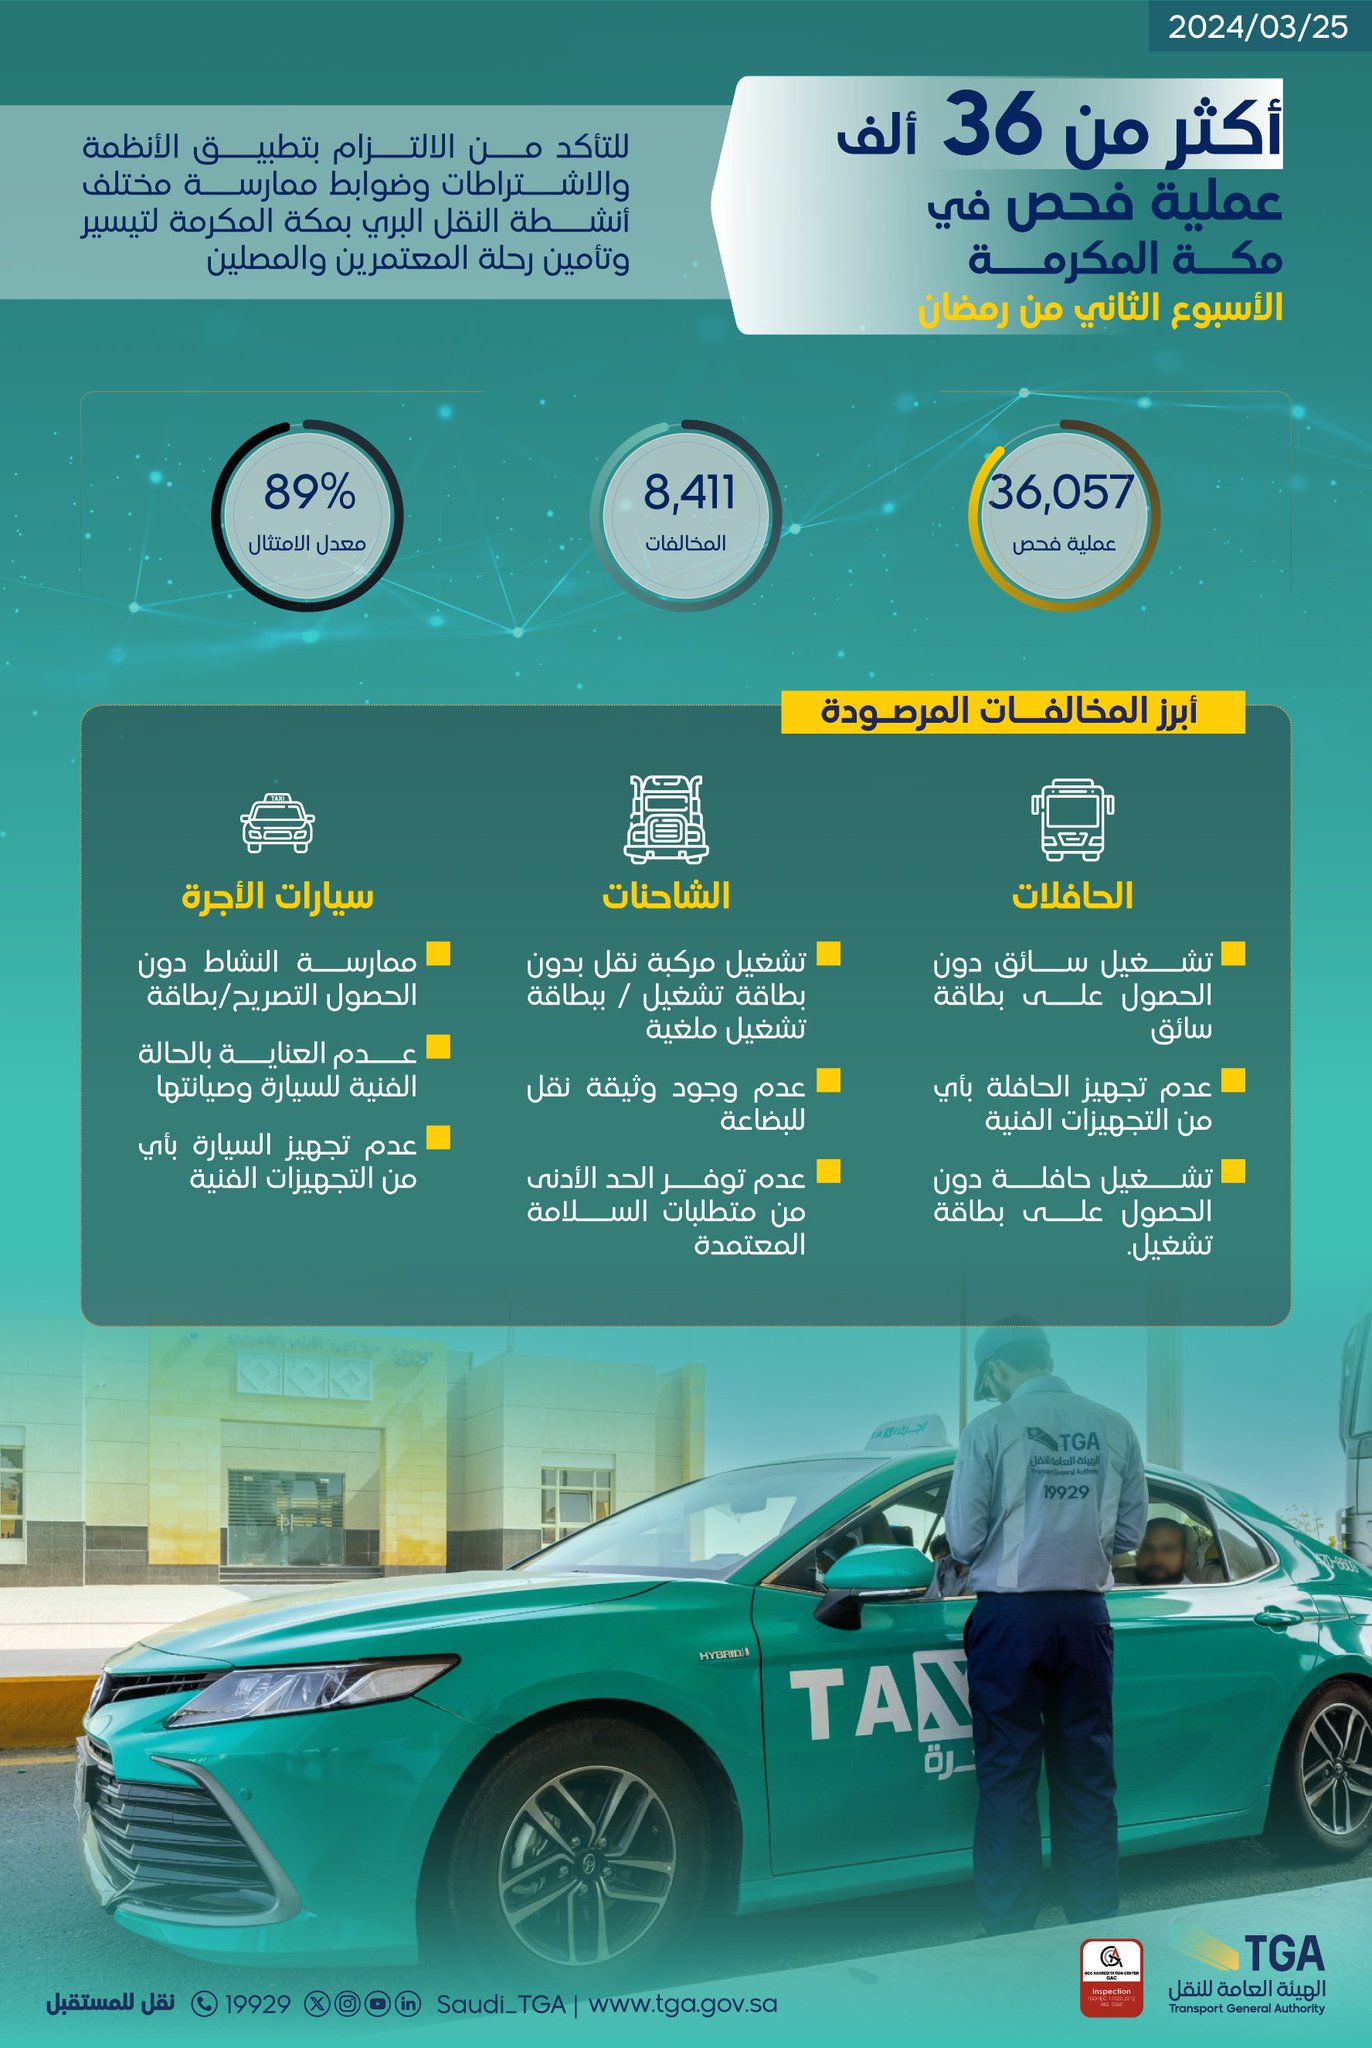  هيئة النقل تنفذ أكثر من 46 ألف عملية فحص في مكة المكرمة والمدينة المنورة خلال الأسبوع الثاني من رمضان